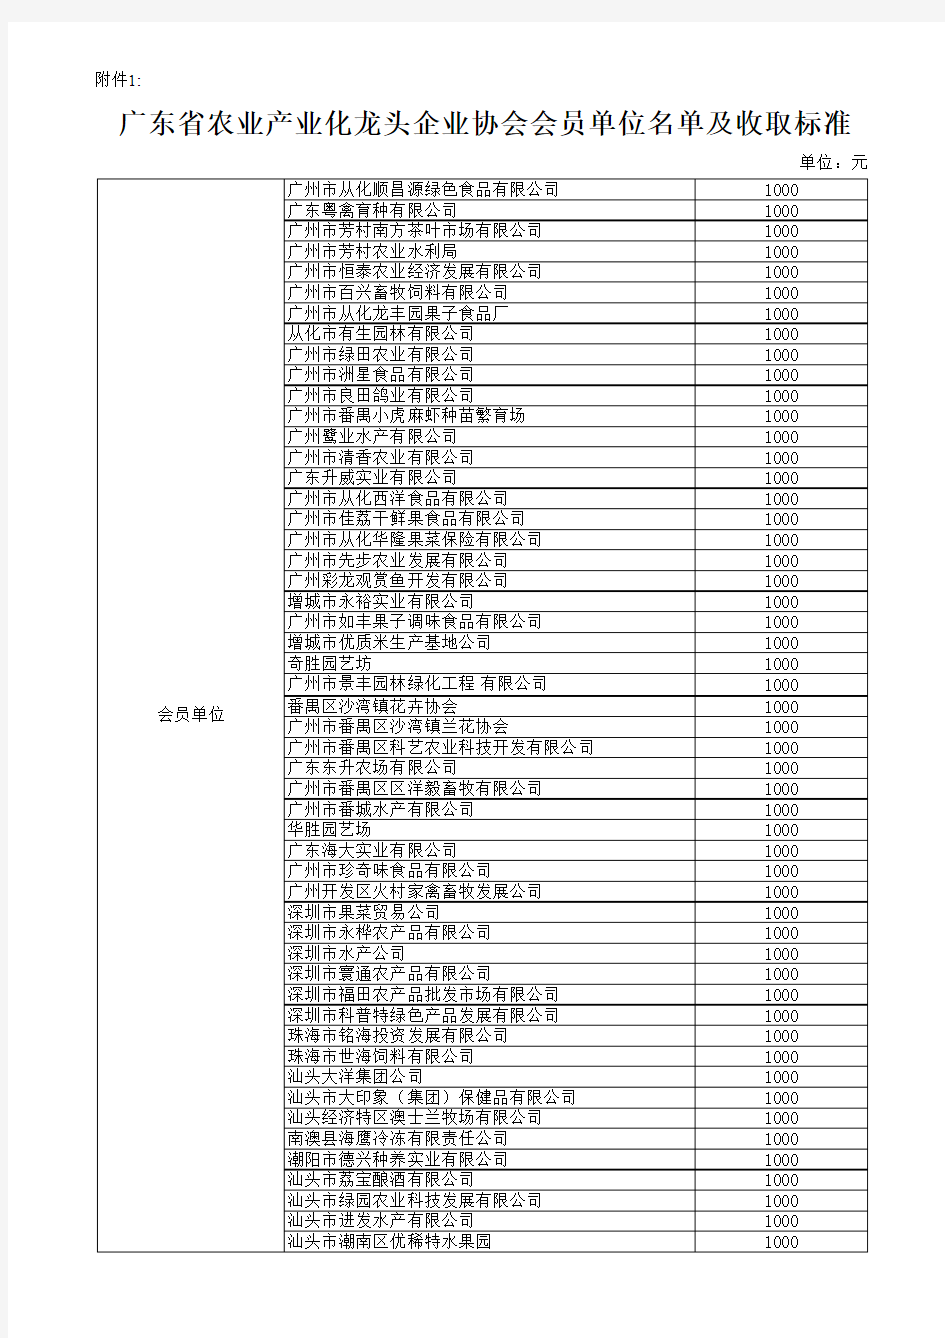 广东省农业产业化龙头企业协会会员单位名单及收取标准